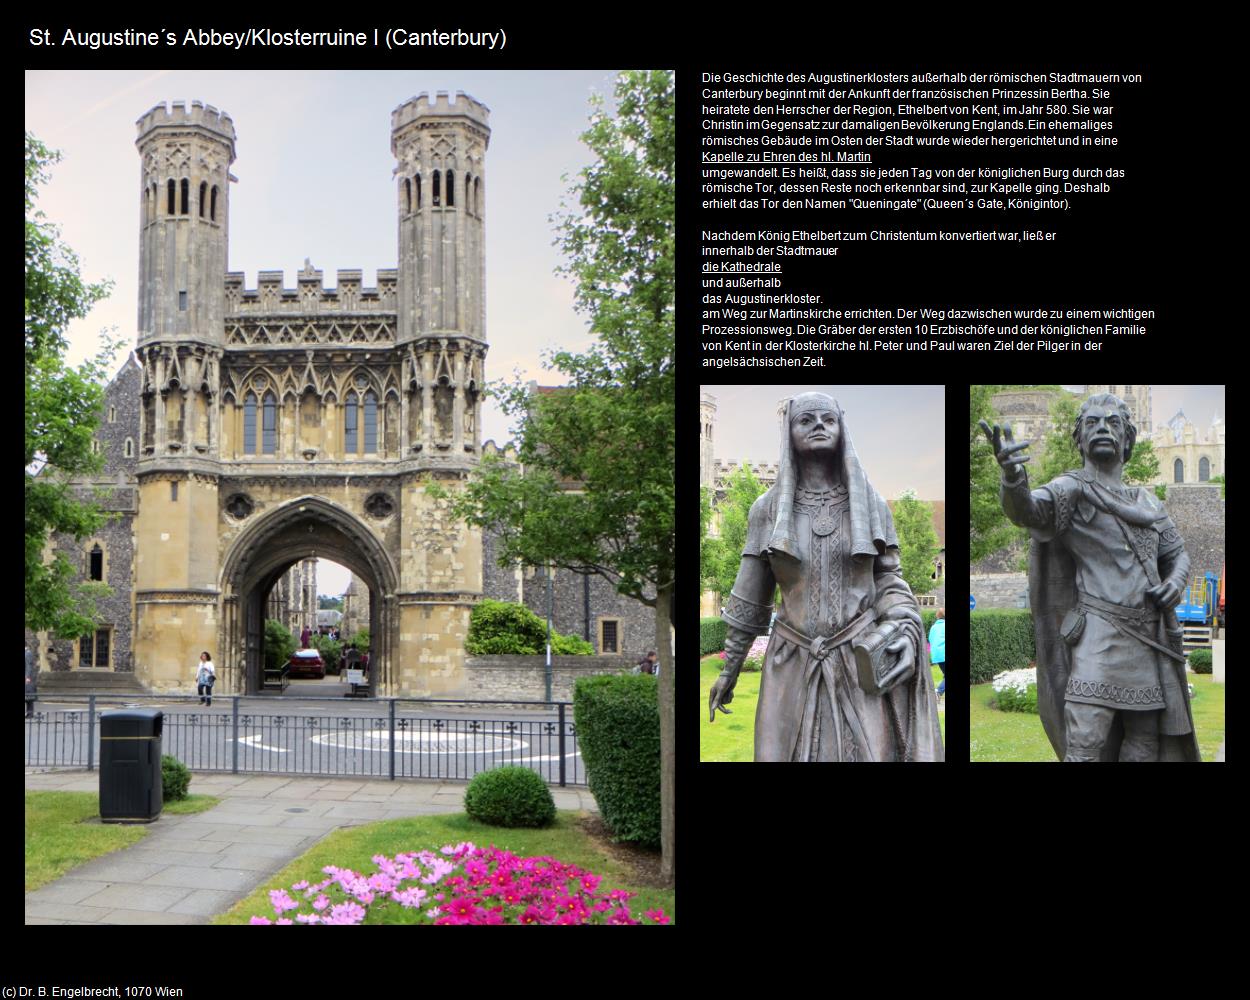 St. Augustine‘s Abbey/Klosterruine I (Canterbury, England) in Kulturatlas-ENGLAND und WALES(c)B.Engelbrecht